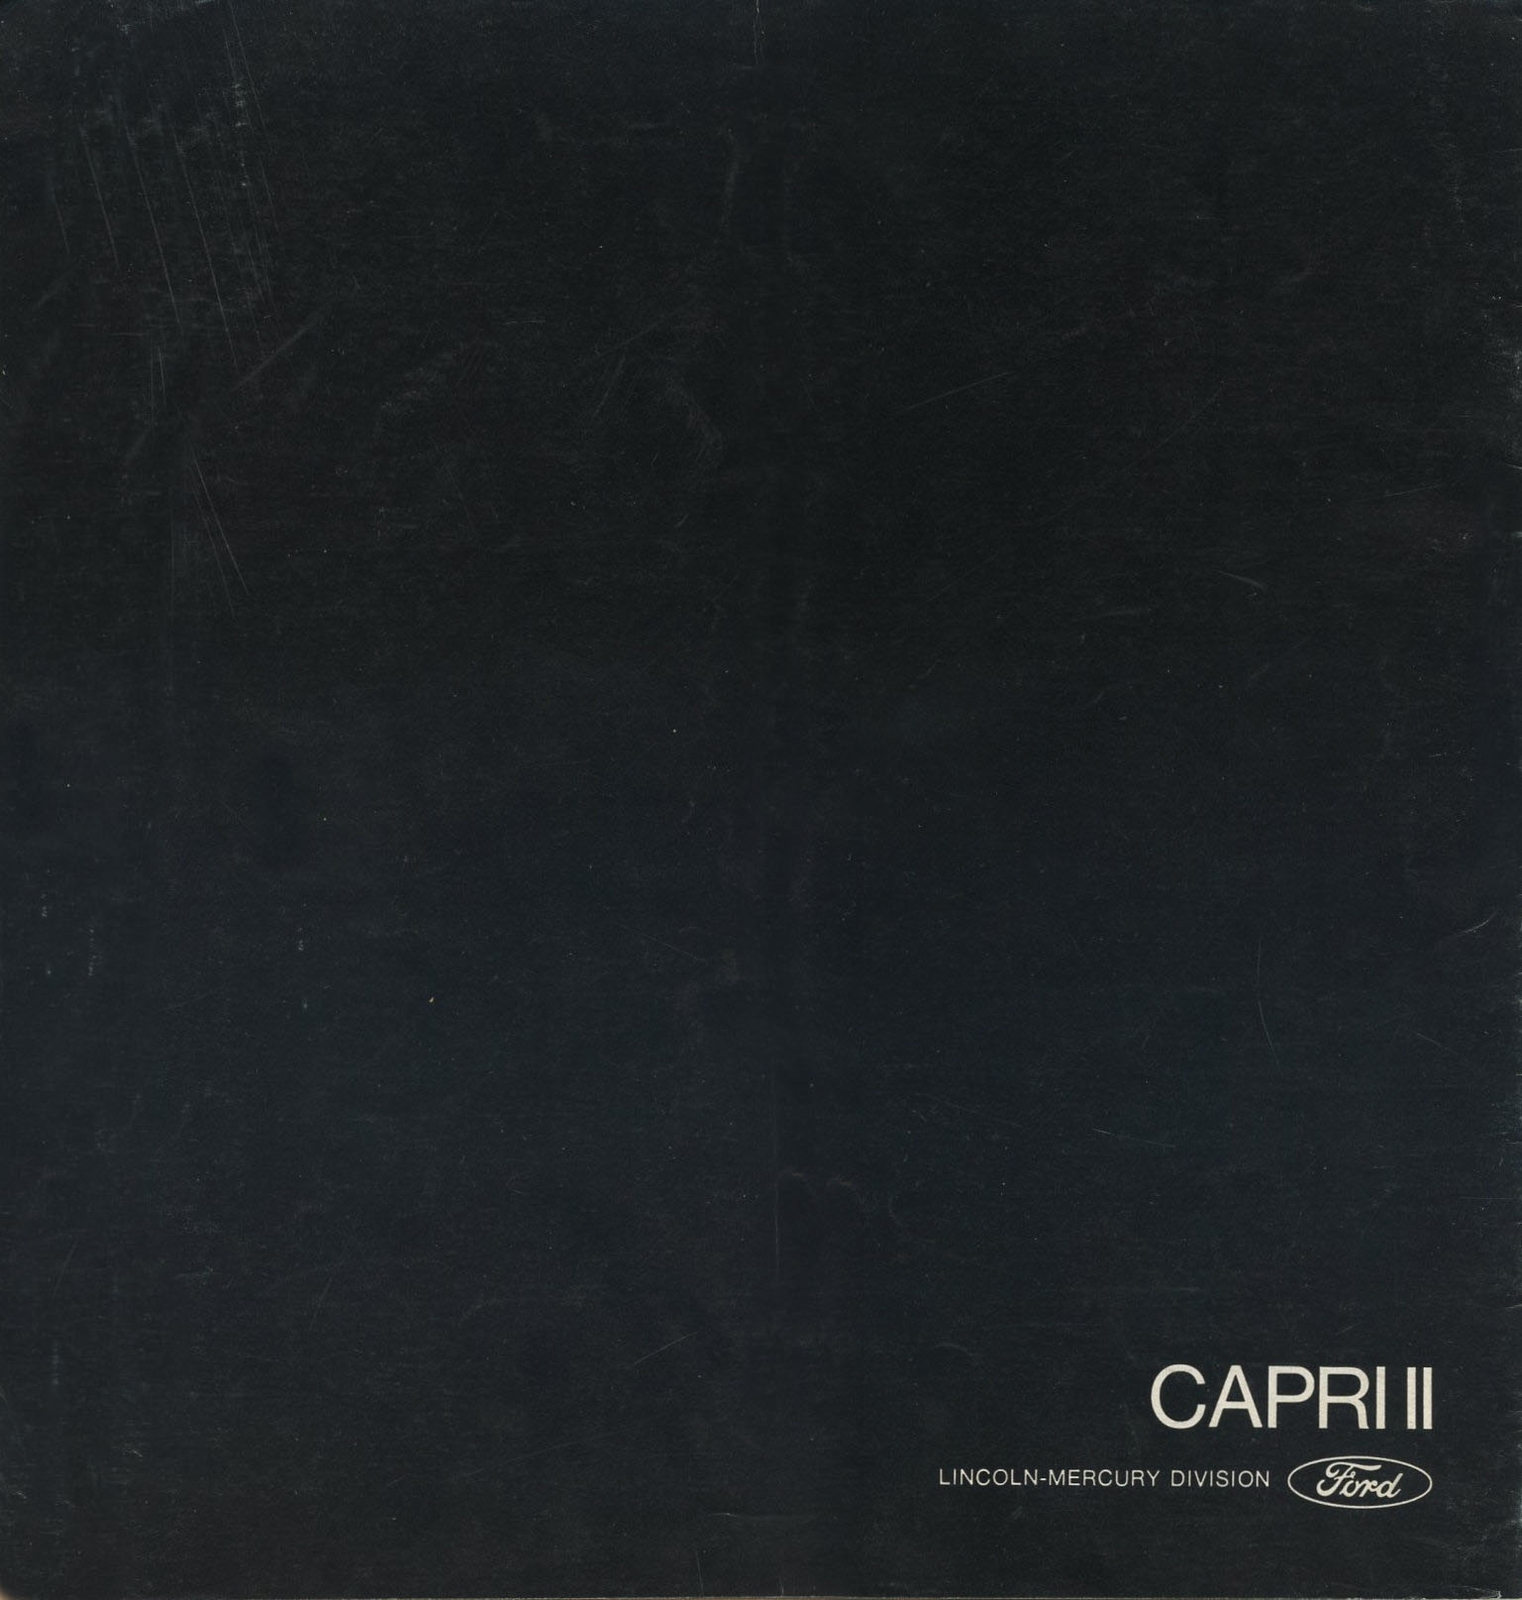 n_1976 Capri II-20.jpg